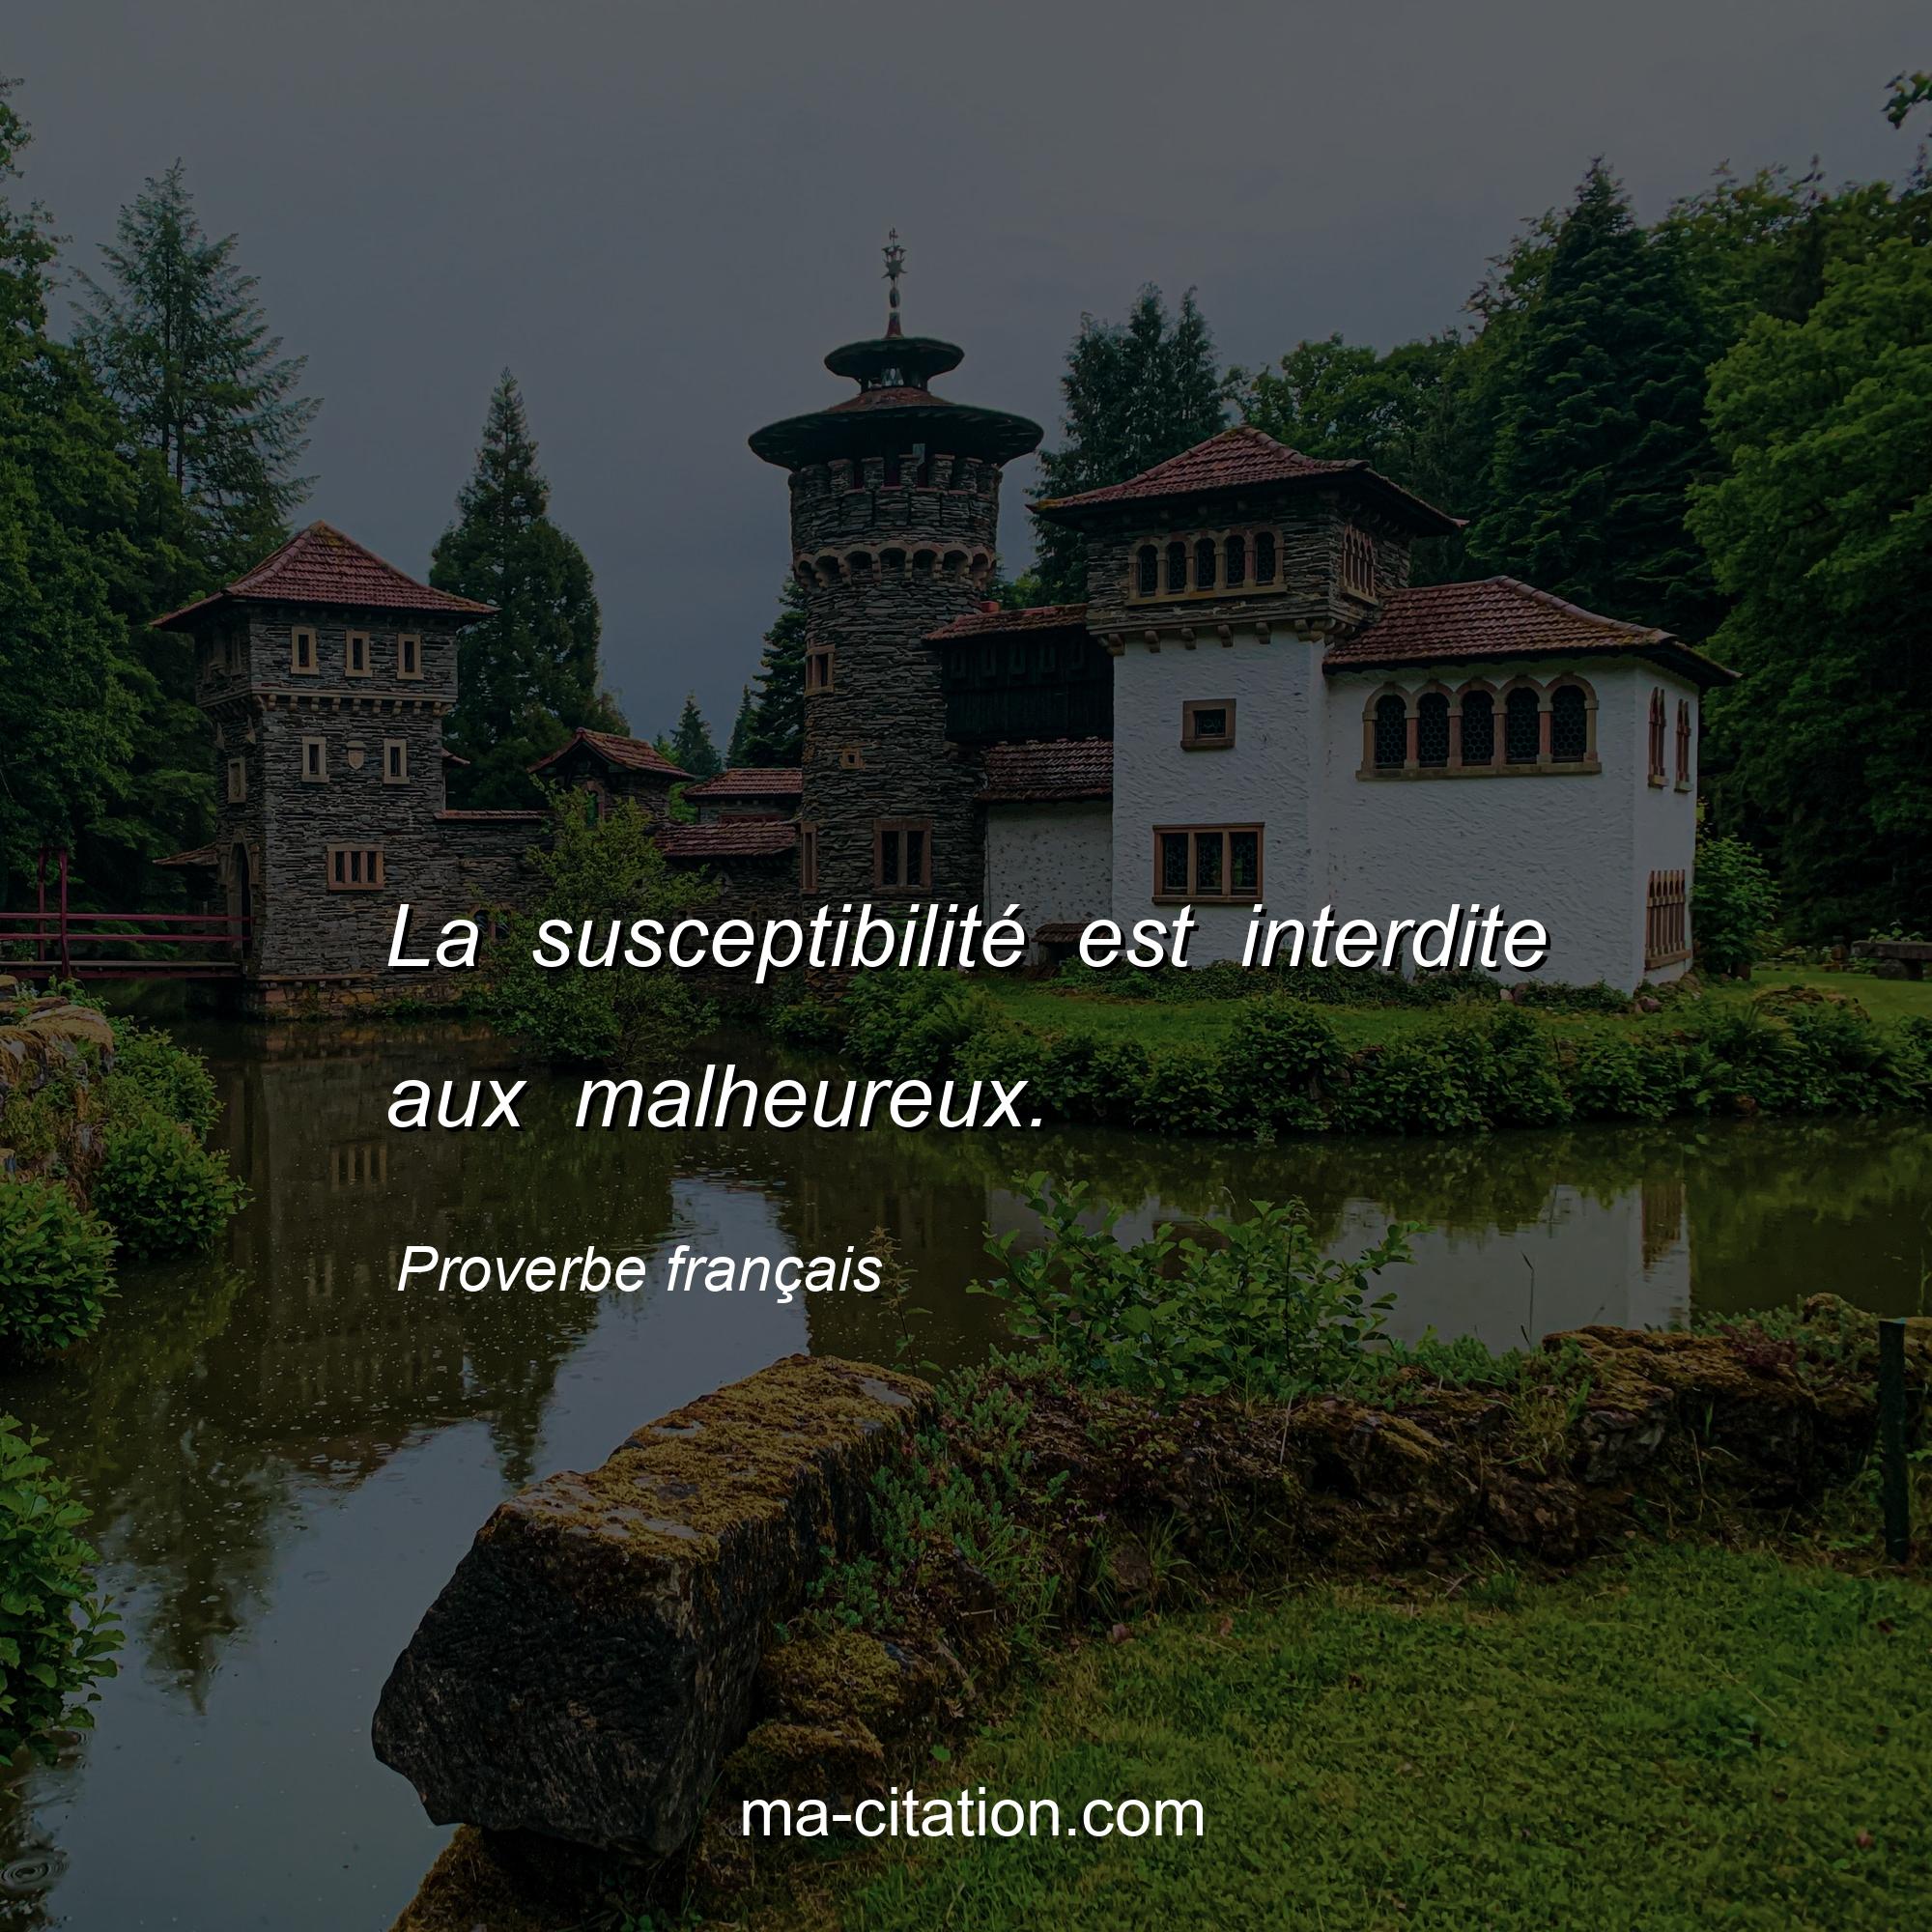 Proverbe français : La susceptibilité est interdite aux malheureux.